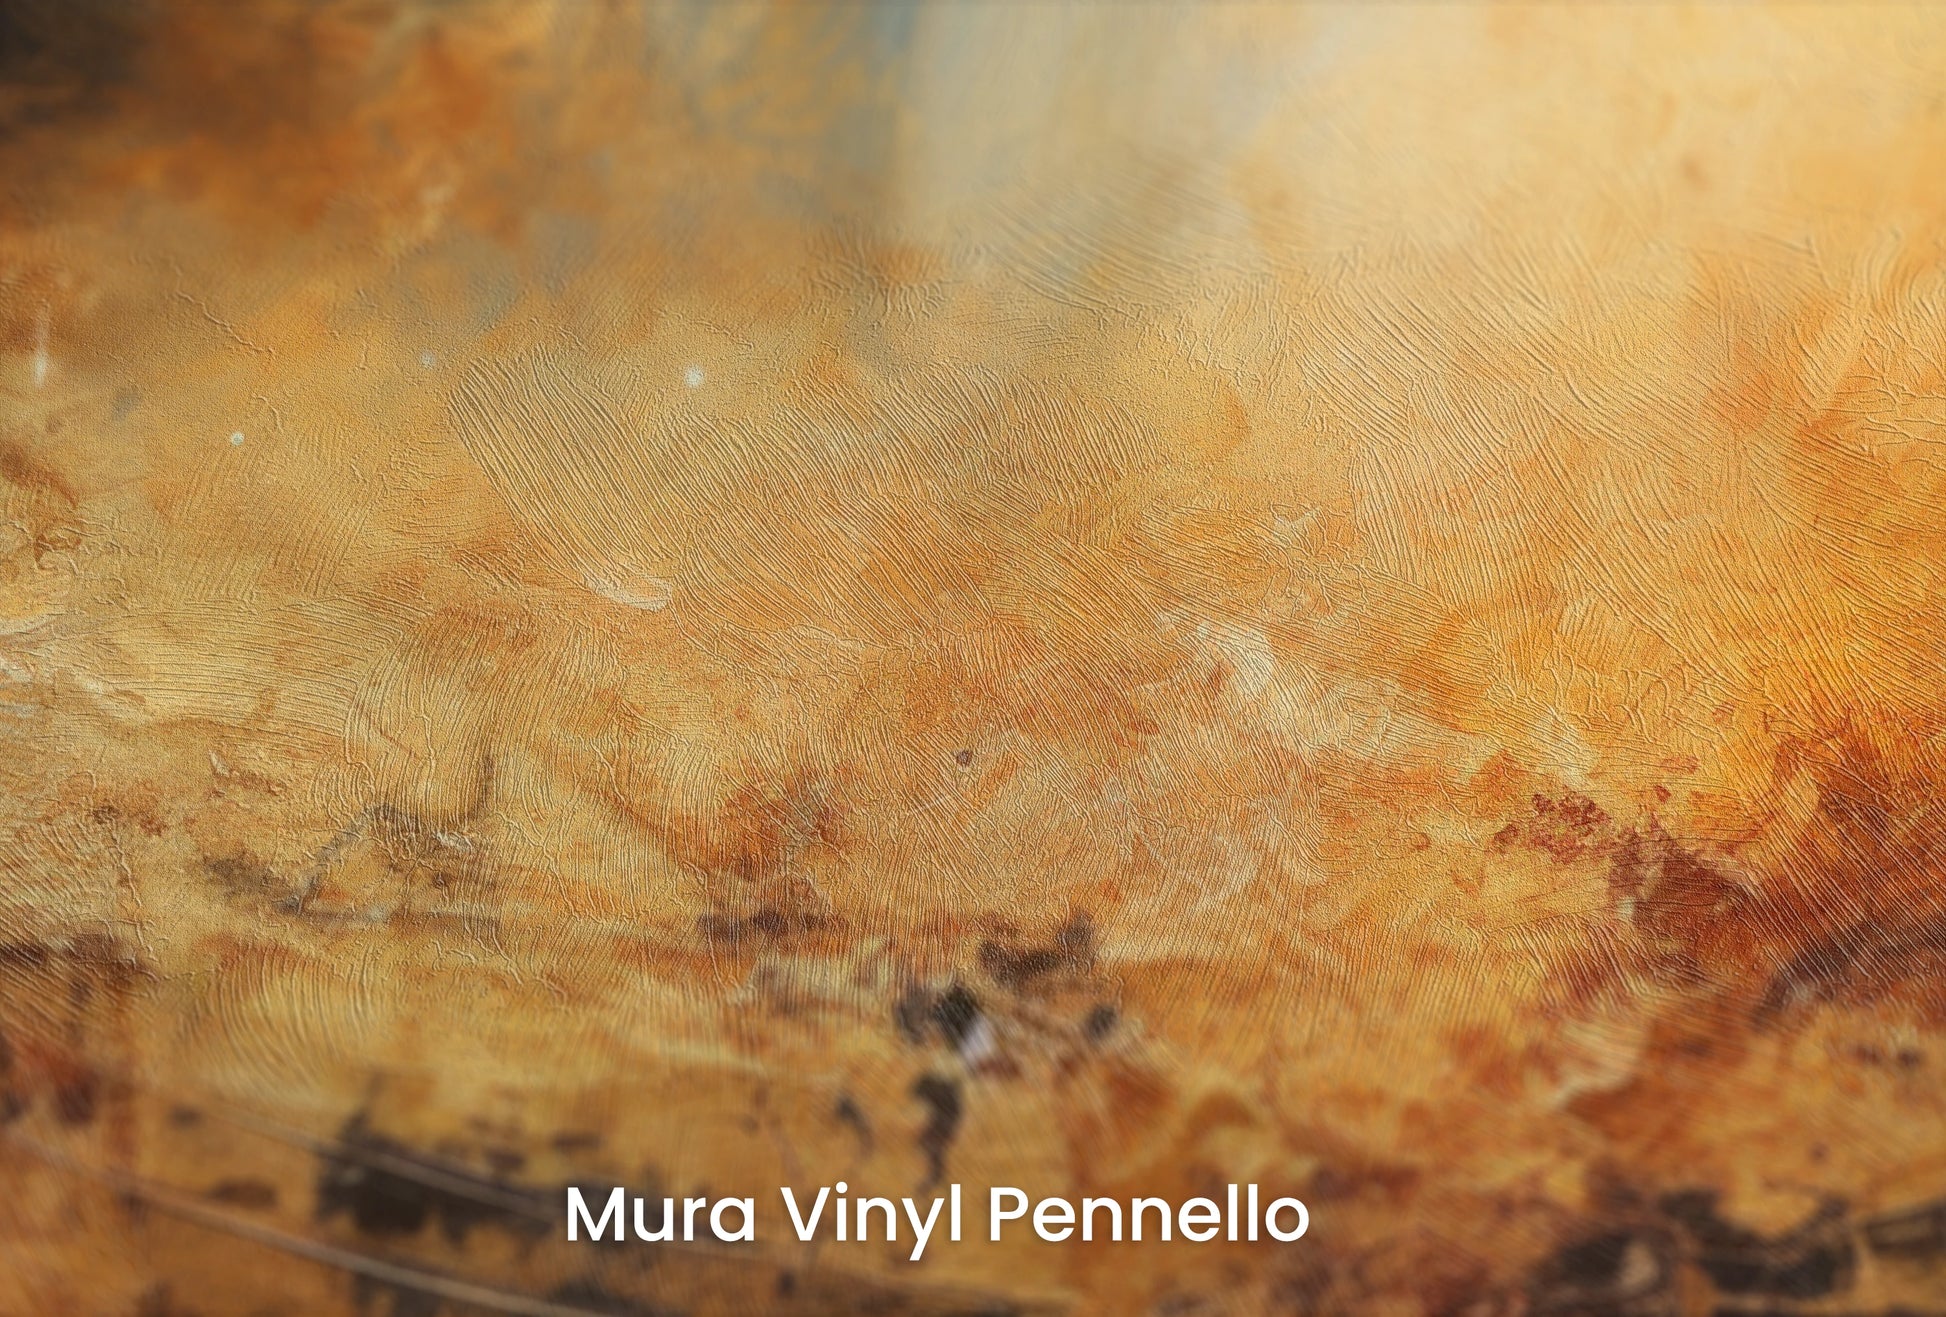 Zbliżenie na artystyczną fototapetę o nazwie Moonlit Glory na podłożu Mura Vinyl Pennello - faktura pociągnięć pędzla malarskiego.